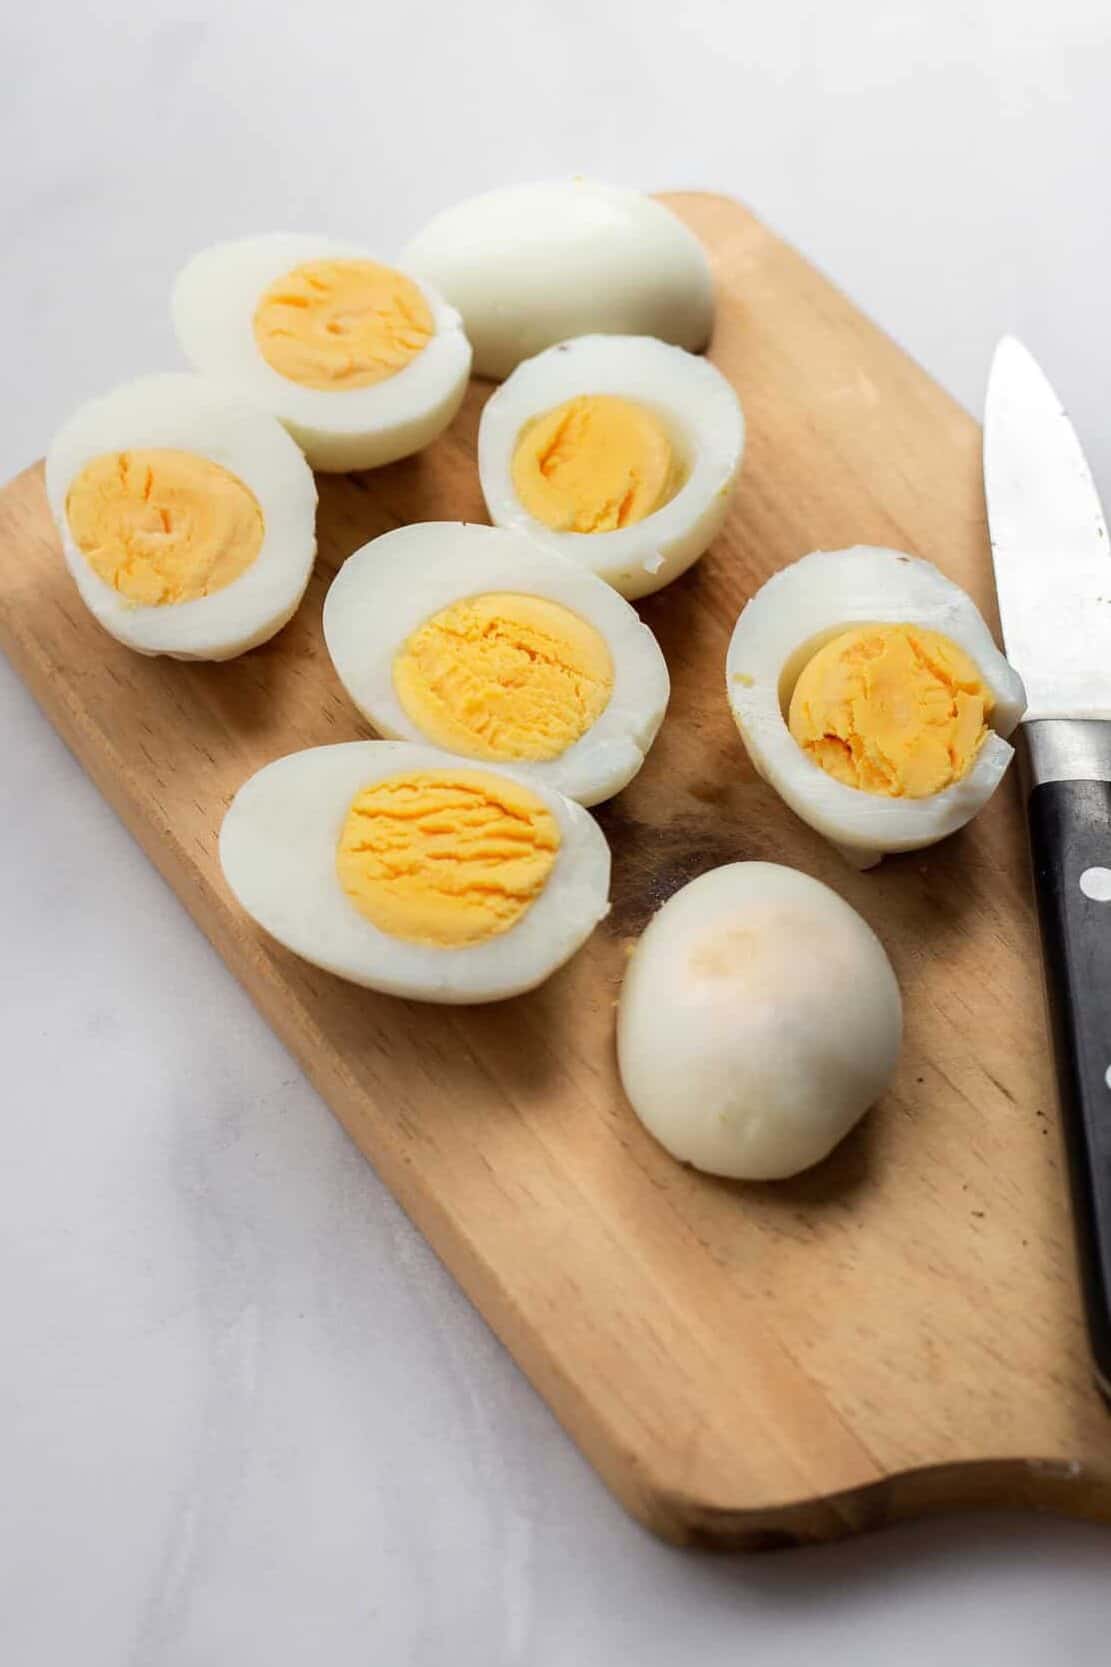 4 hard boiled eggs cut in half longways sitting on a wood cutting board